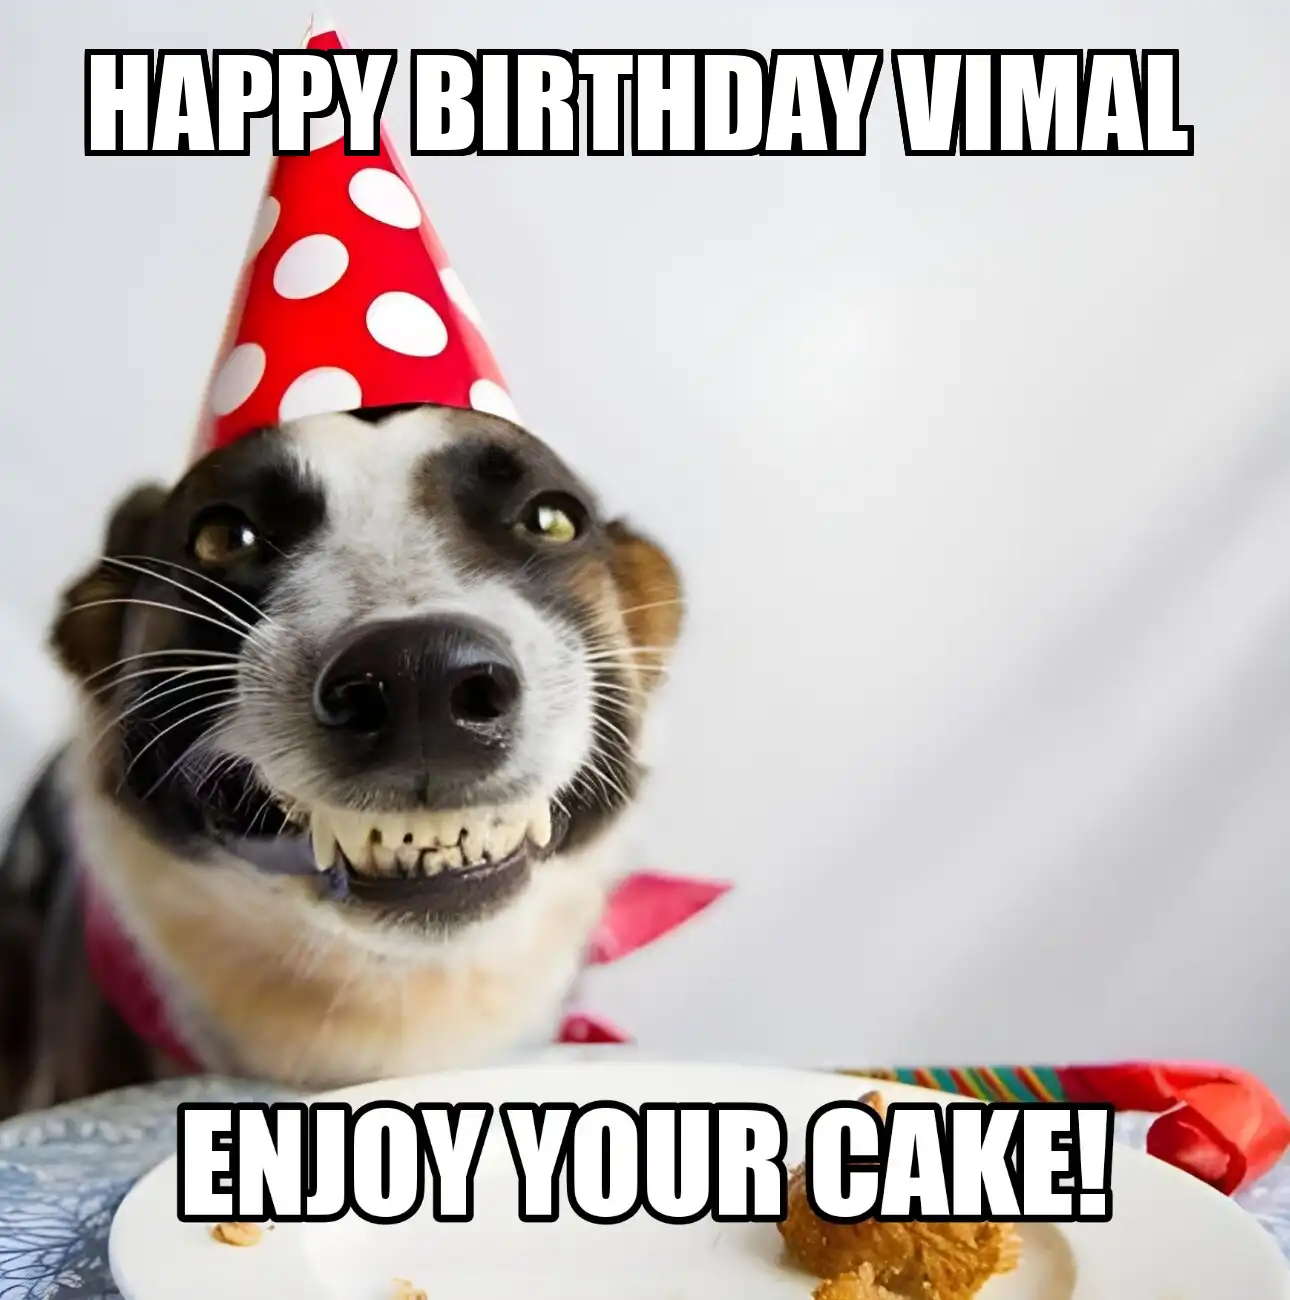 Happy Birthday Vimal Enjoy Your Cake Dog Meme